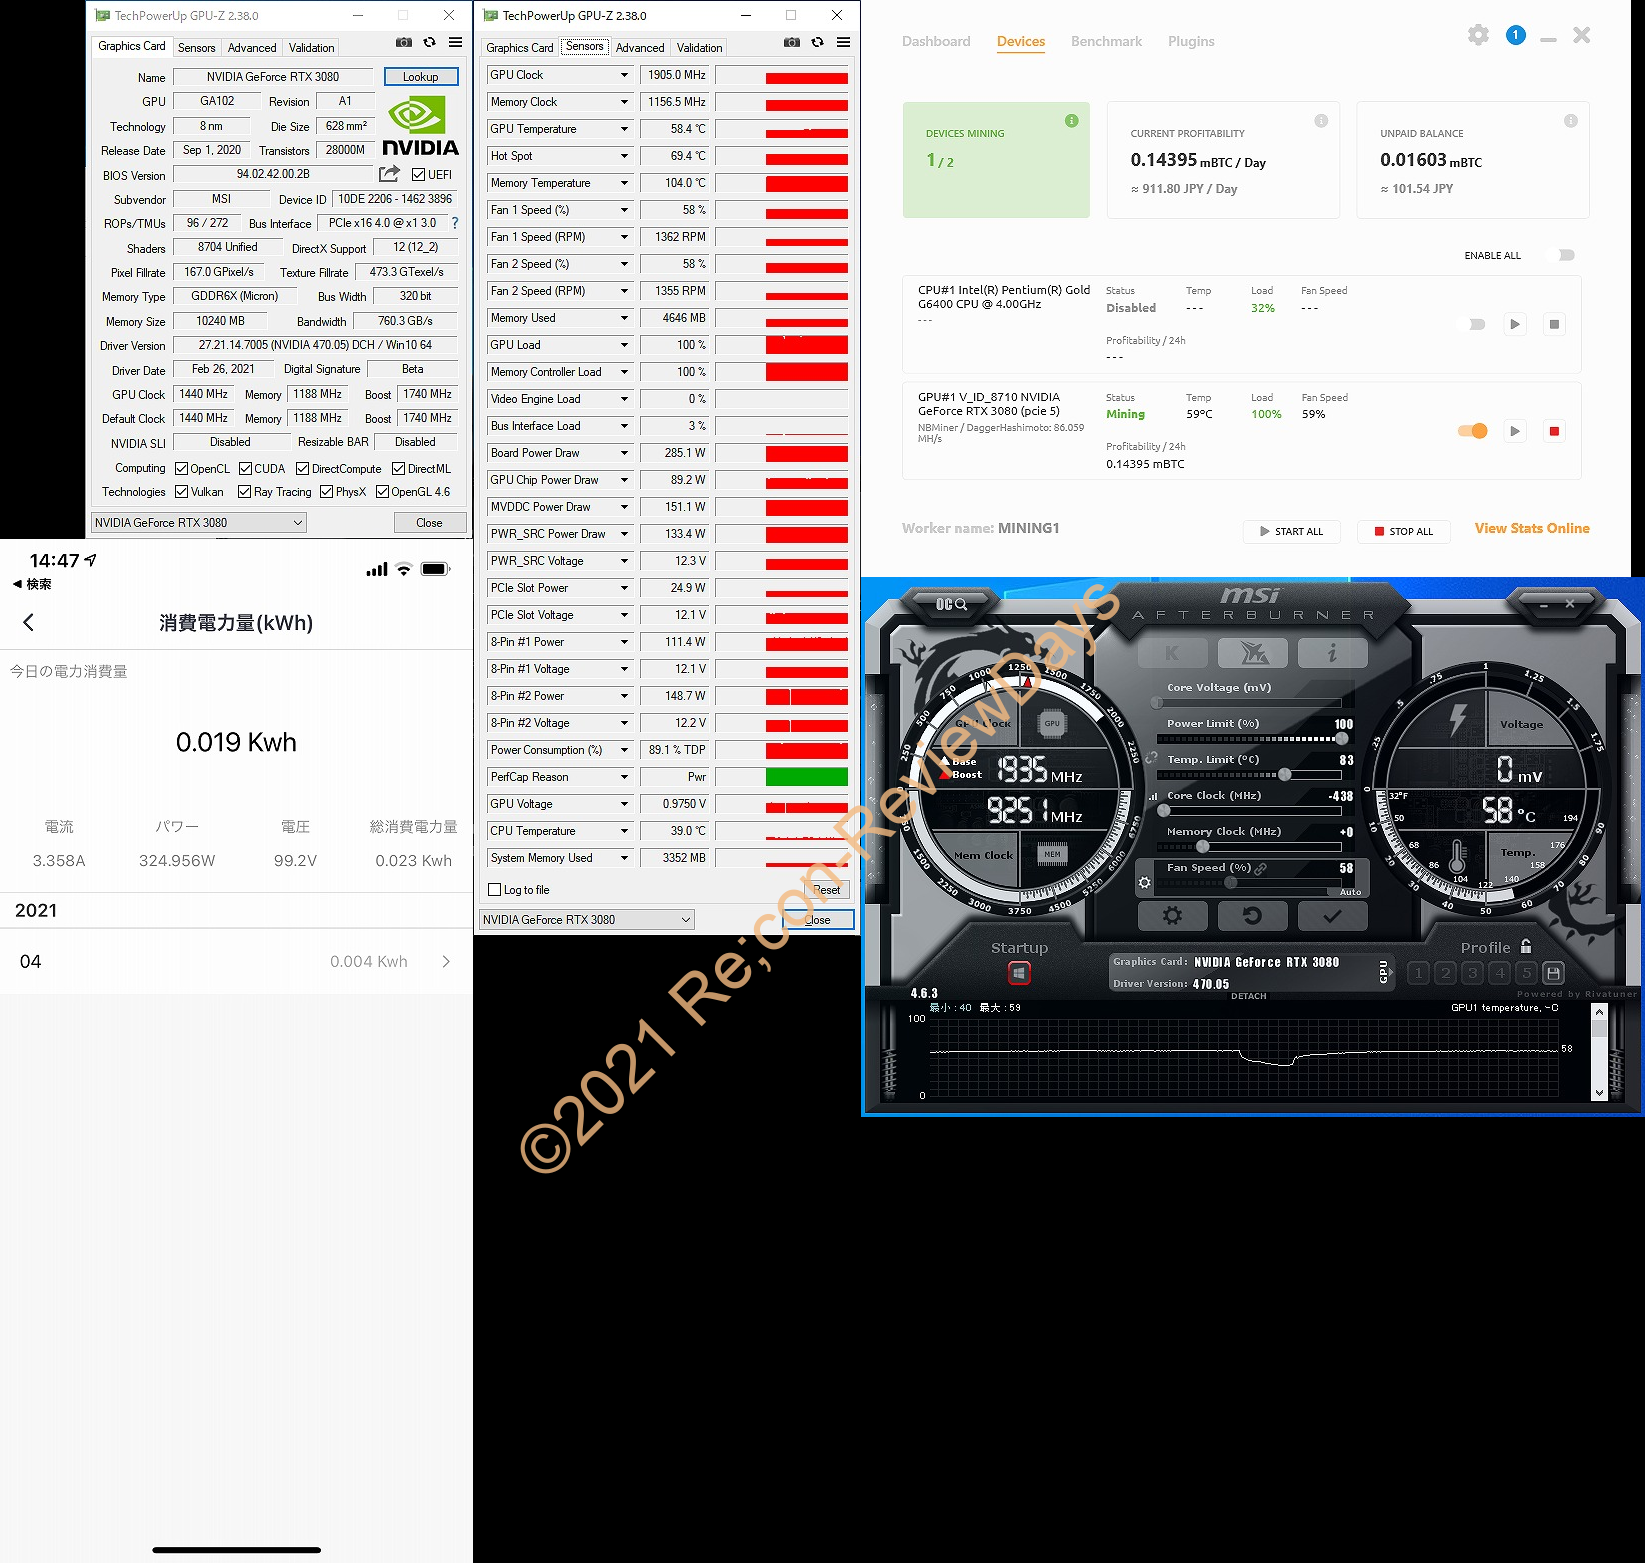 NVIDIA GeForce RTX 3080をオーバークロックして定格時の温度、消費電力、ハッシュレートを簡単に比較してみました #NVIDIA #GeForce #RTX3080 #NiceHash #マイニング #Mining